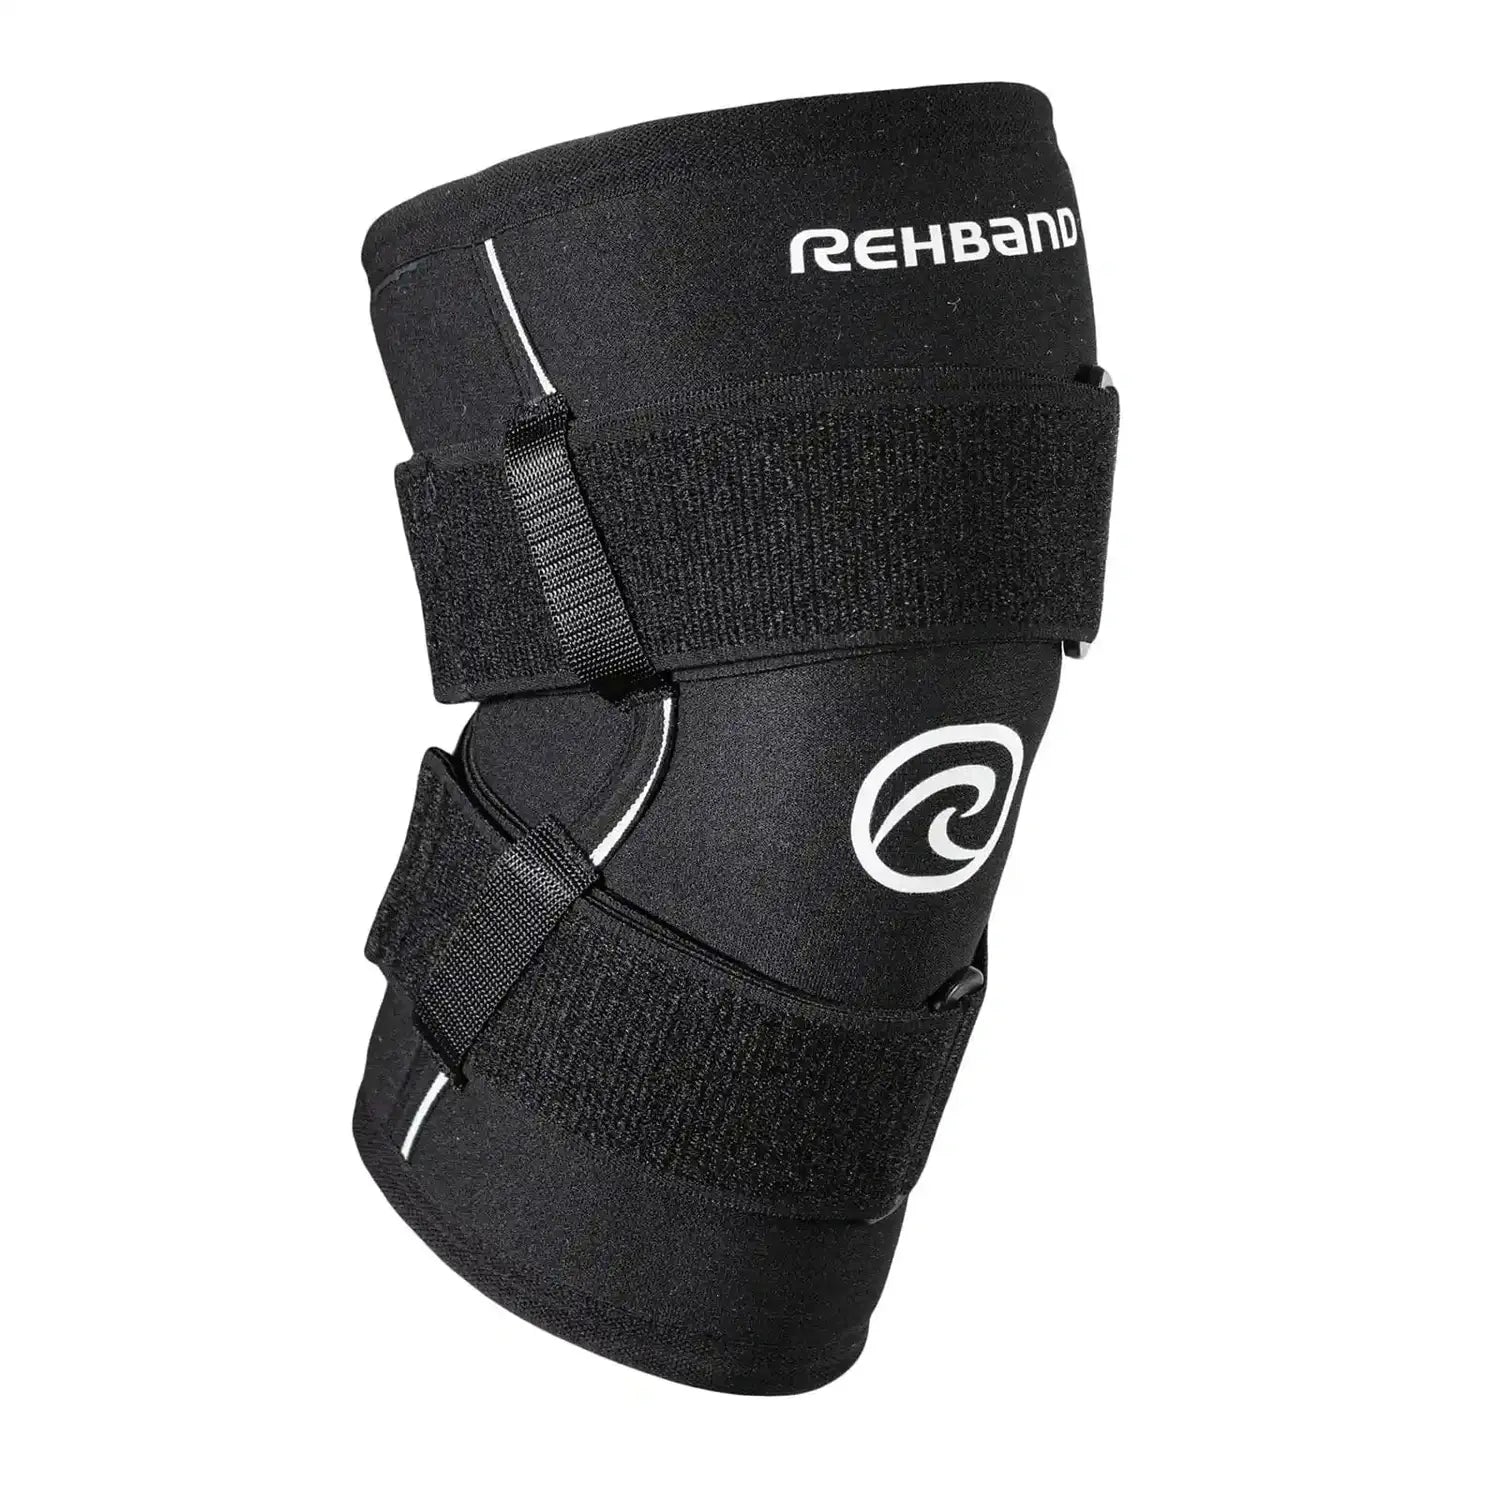 Rehband X-RX Knee Support 7mm mit Straps kaufen bei HighPowered.ch